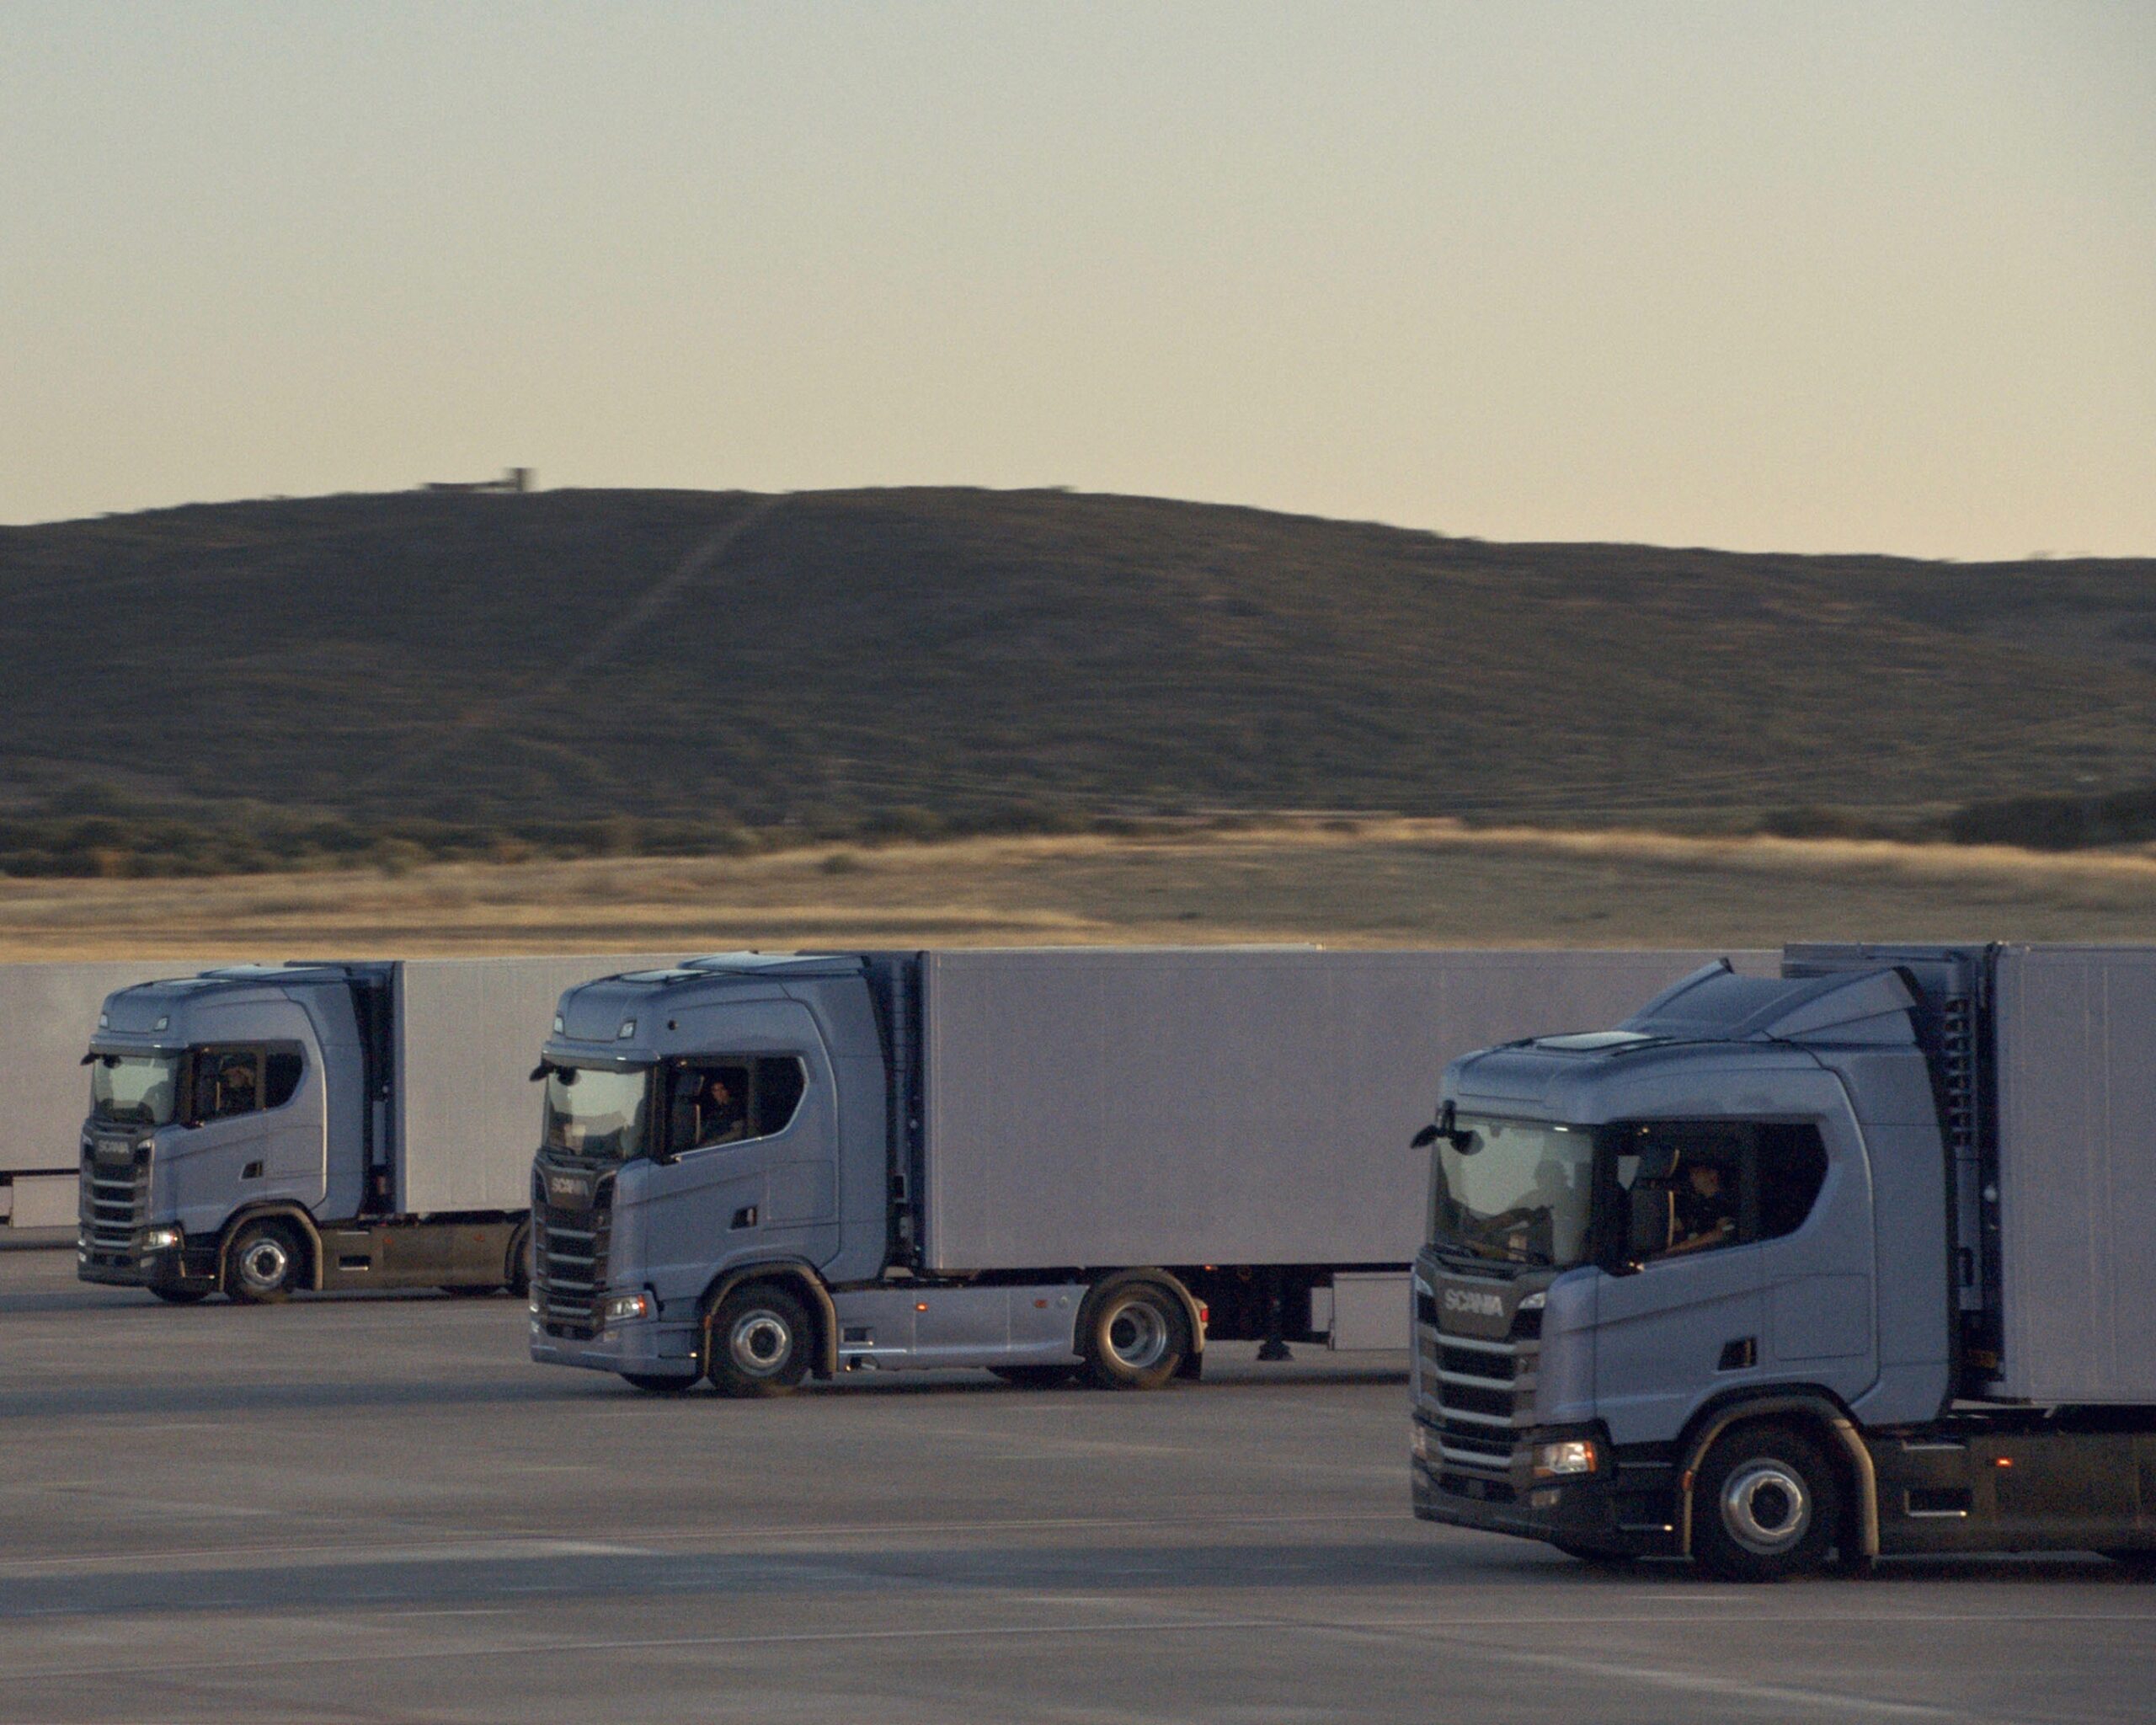 Crisi semiconduttori: Scania ferma la produzione di camion in Svezia, Francia e Paesi Bassi